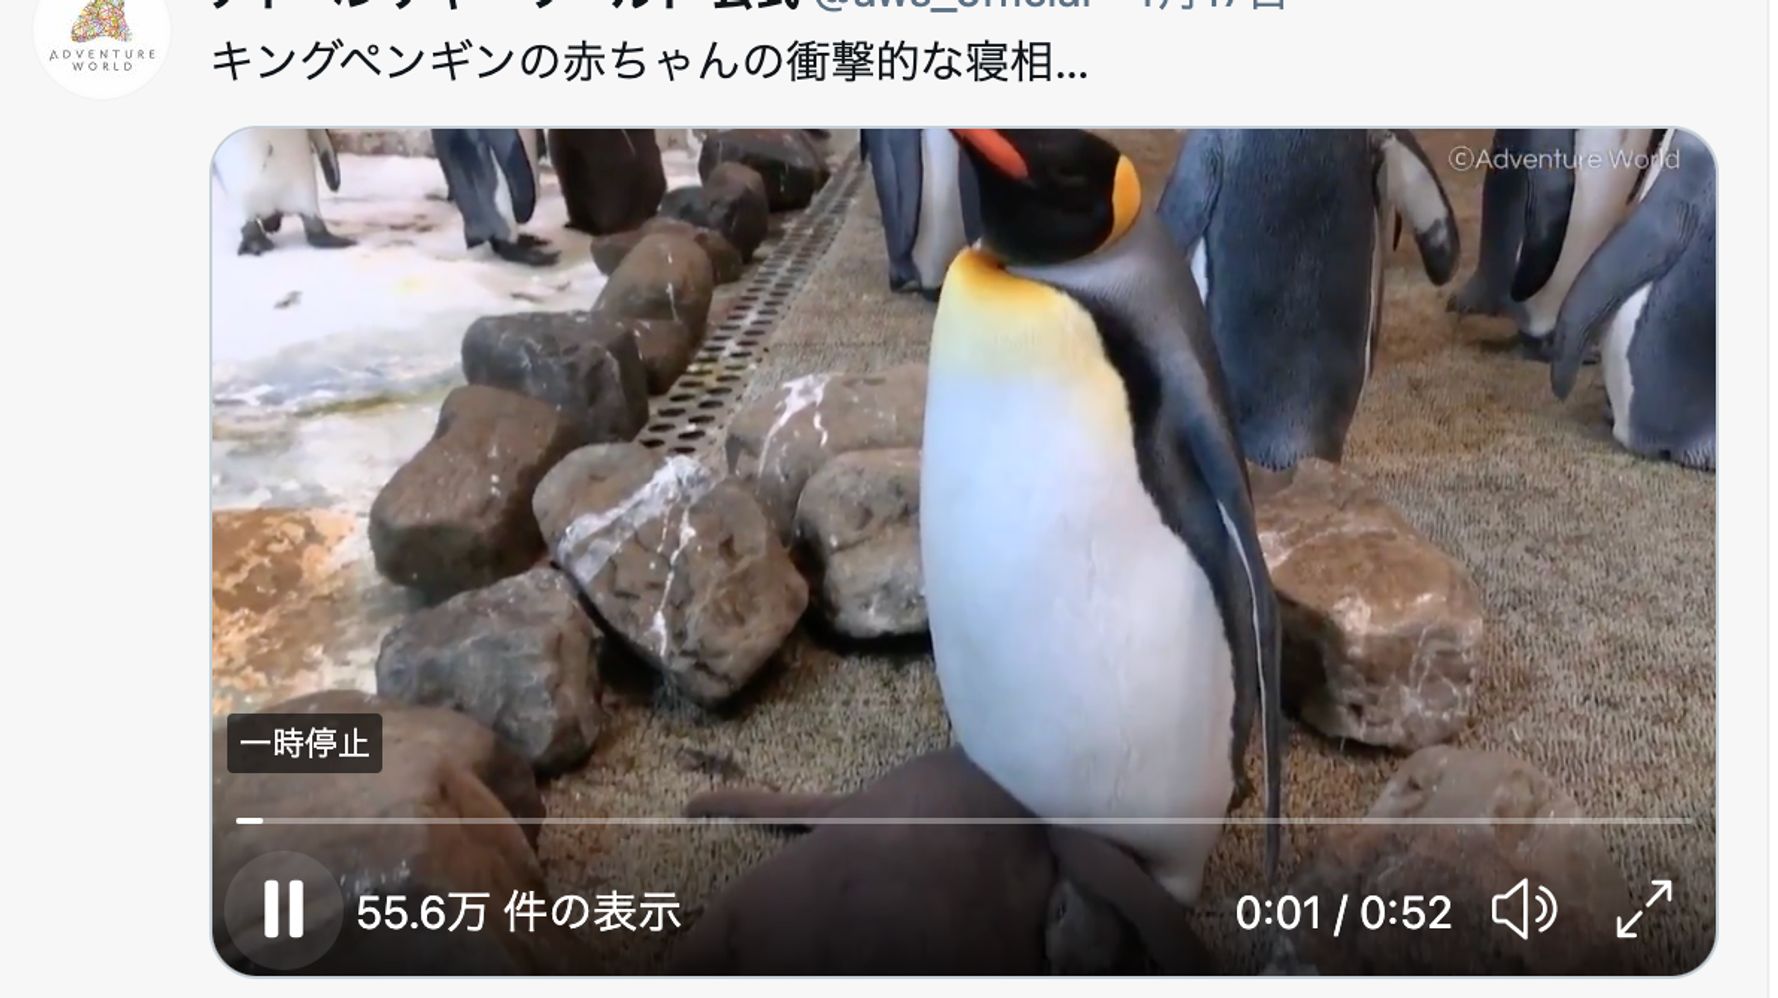 首 とれてない キングペンギンの赤ちゃんの寝相がホラーだった 動画 ハフポスト